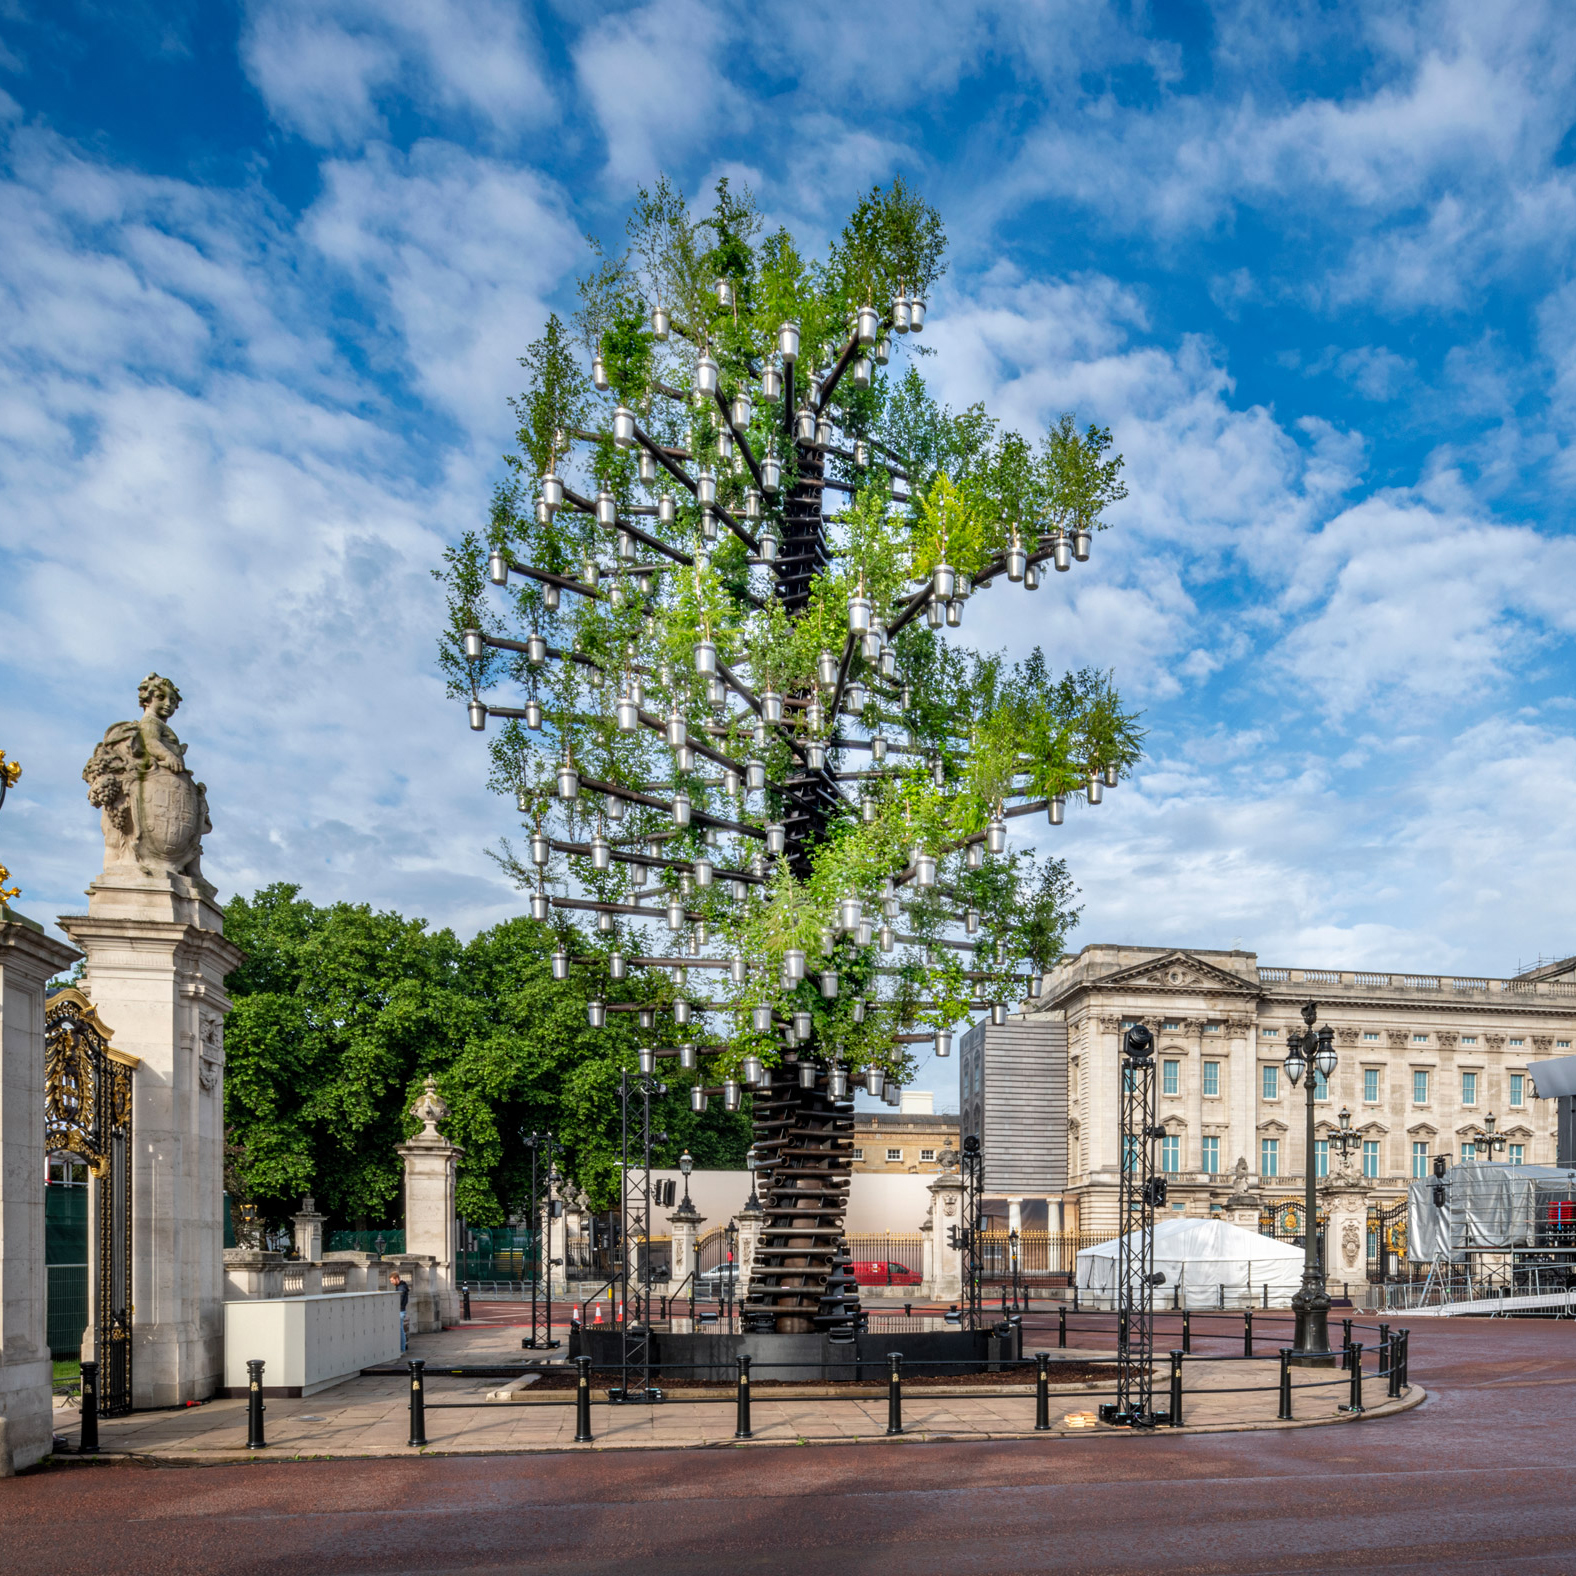 Tree of Trees by Studio Heatherwick